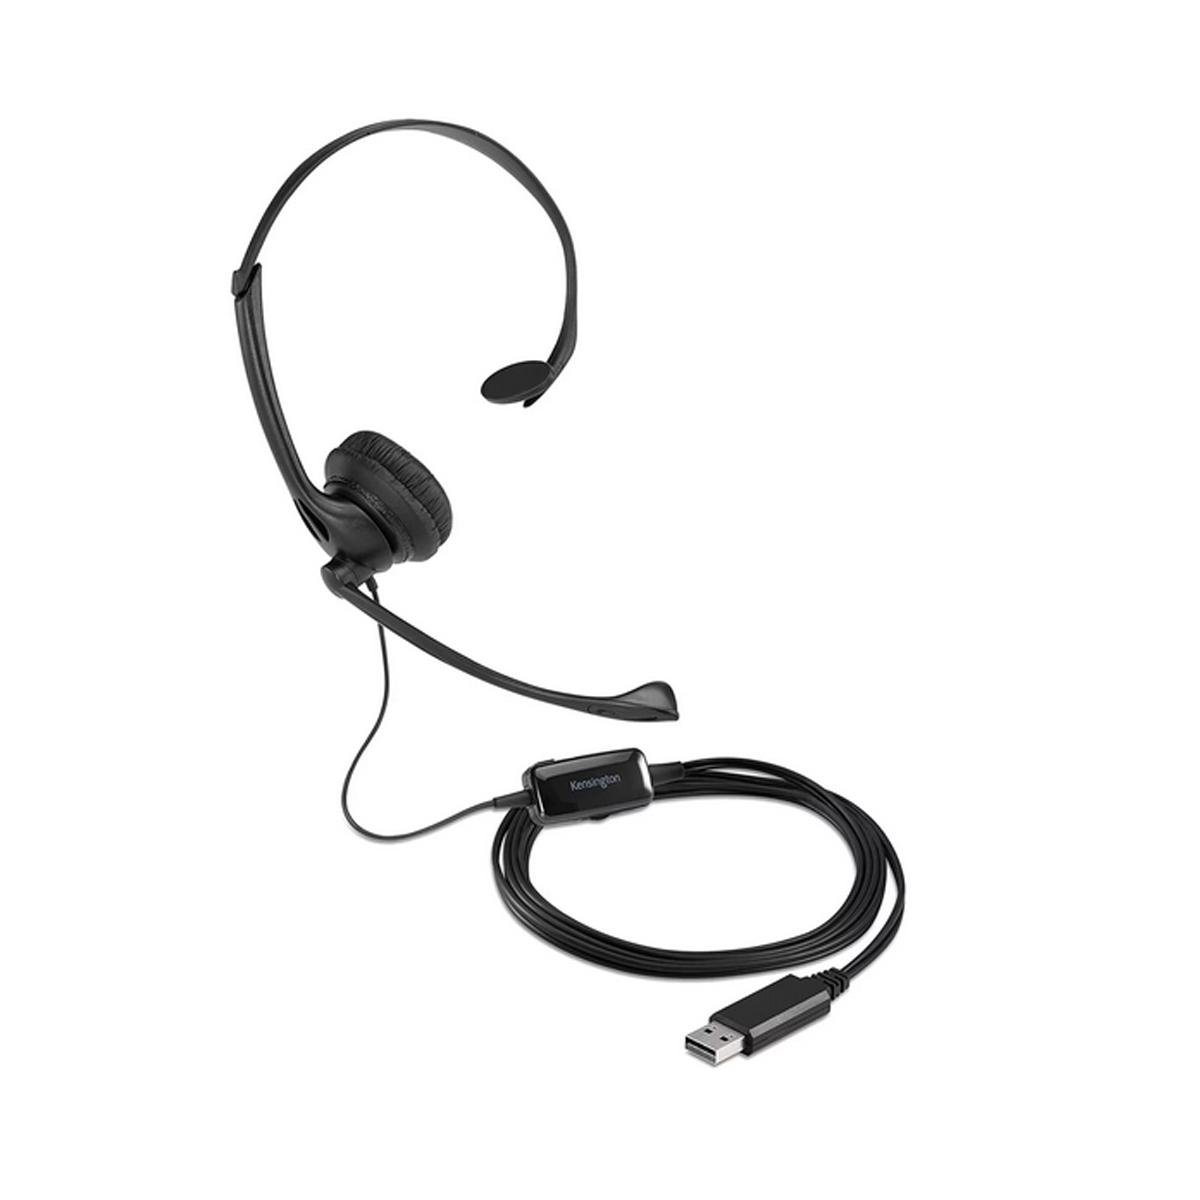 Casti Kensington, reglabile, microfon cu anulare sunet inclus, control volum, conexiune cablu USB-A 1.8 m, nergu